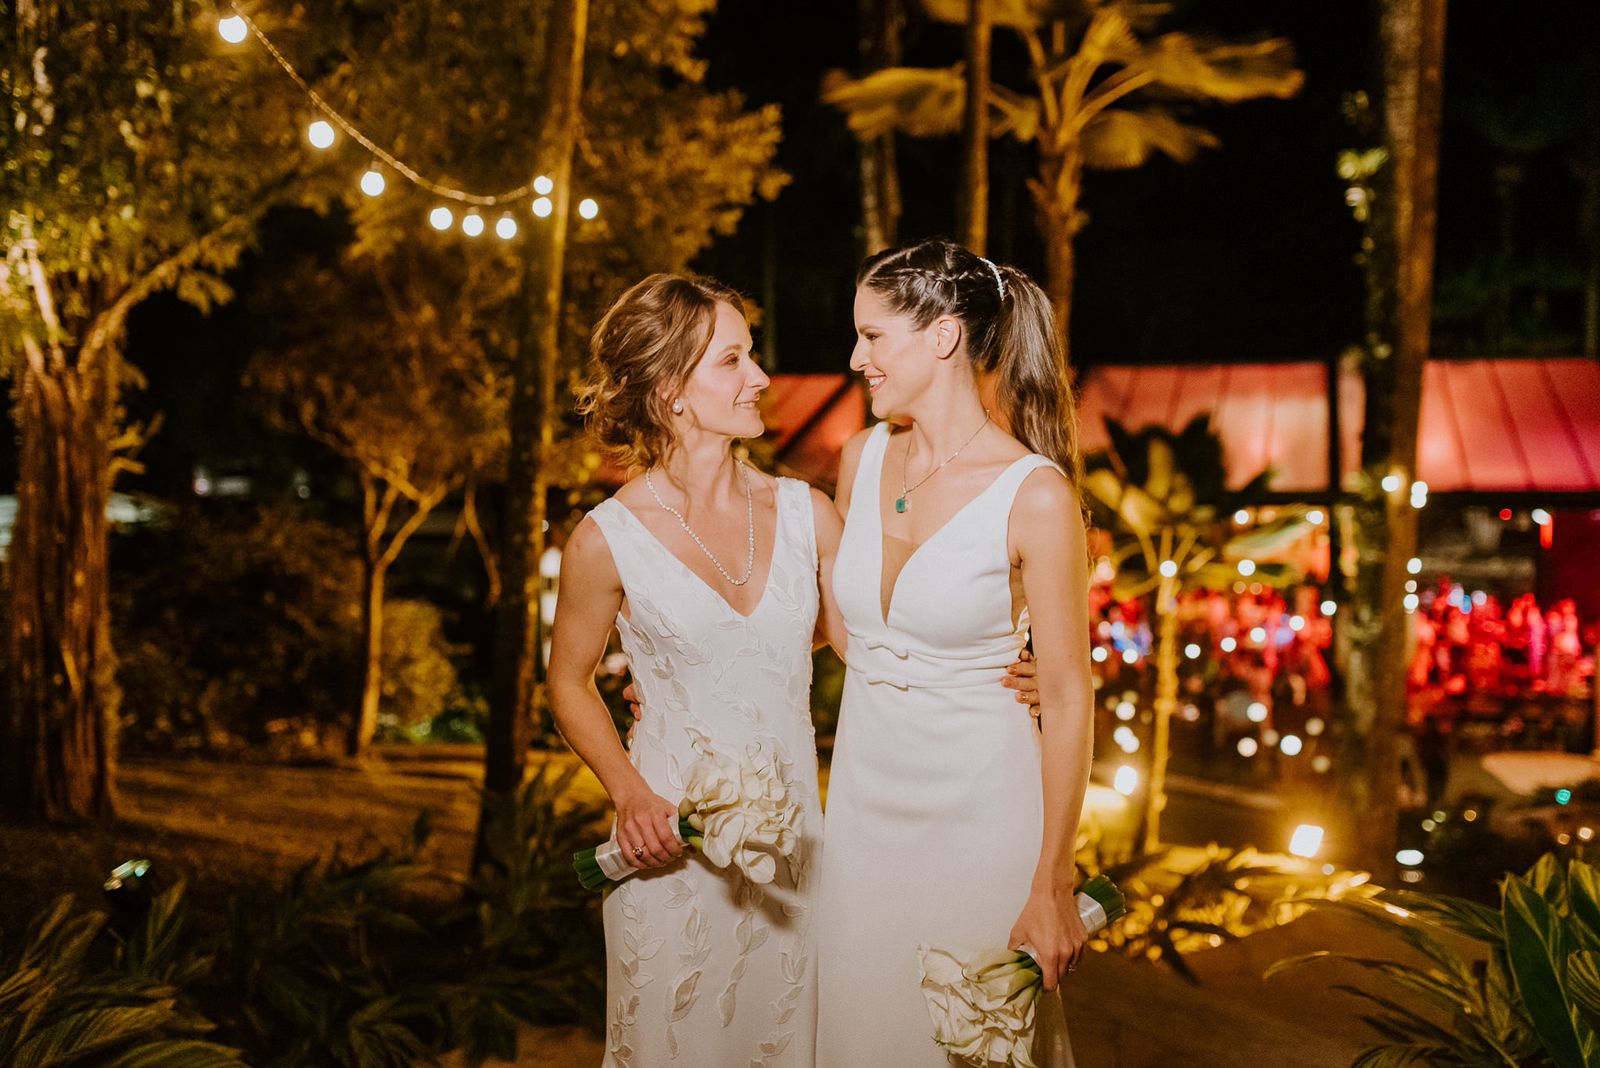 Carla Pontes e Amanda Arraes celebram o casamento com a família e amigos